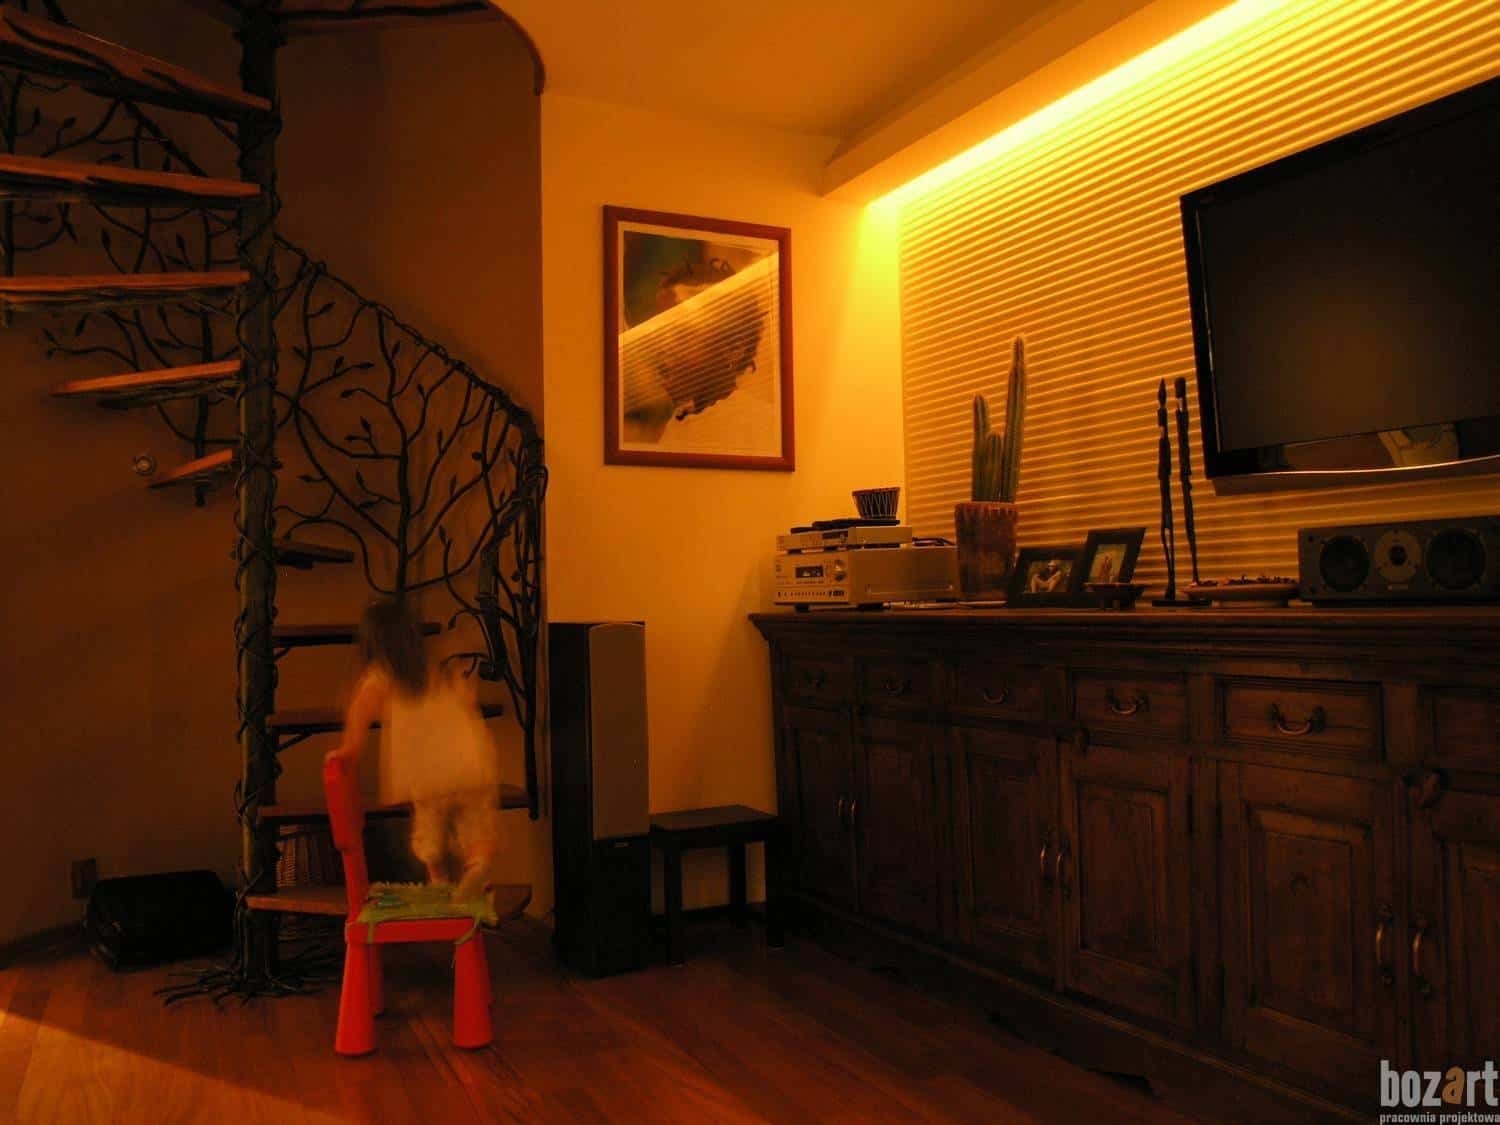 dziecko wchodzące po schodach